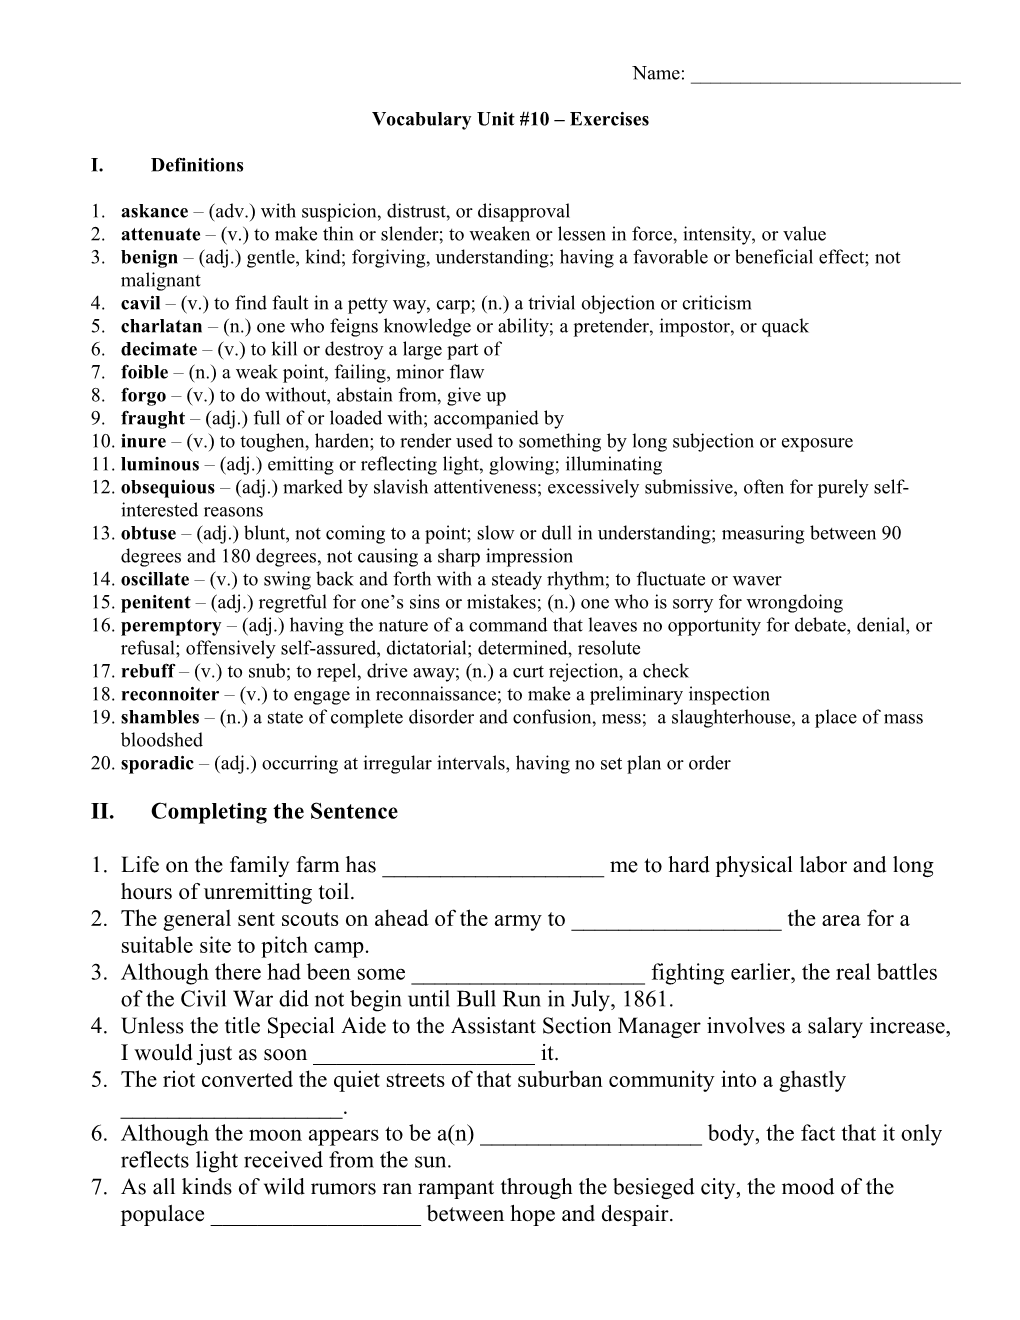 Vocabulary Unit #10 Exercises